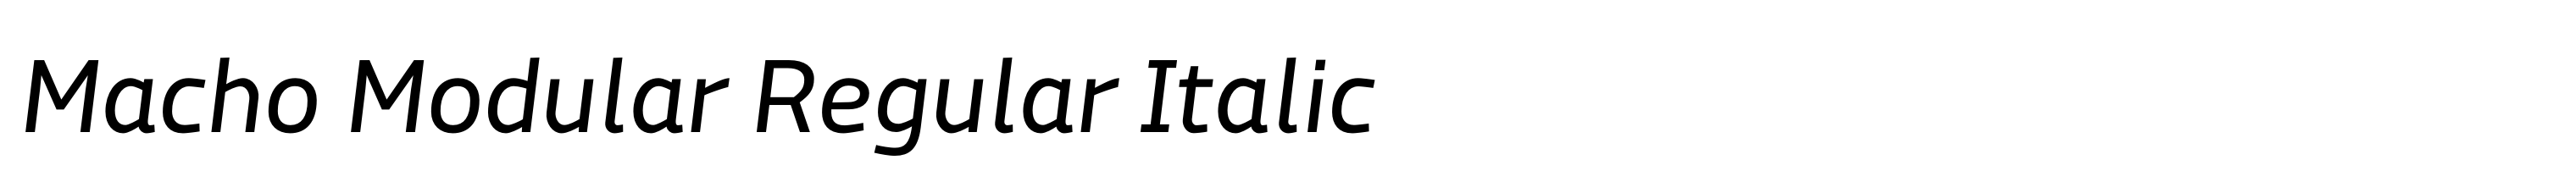 Macho Modular Regular Italic